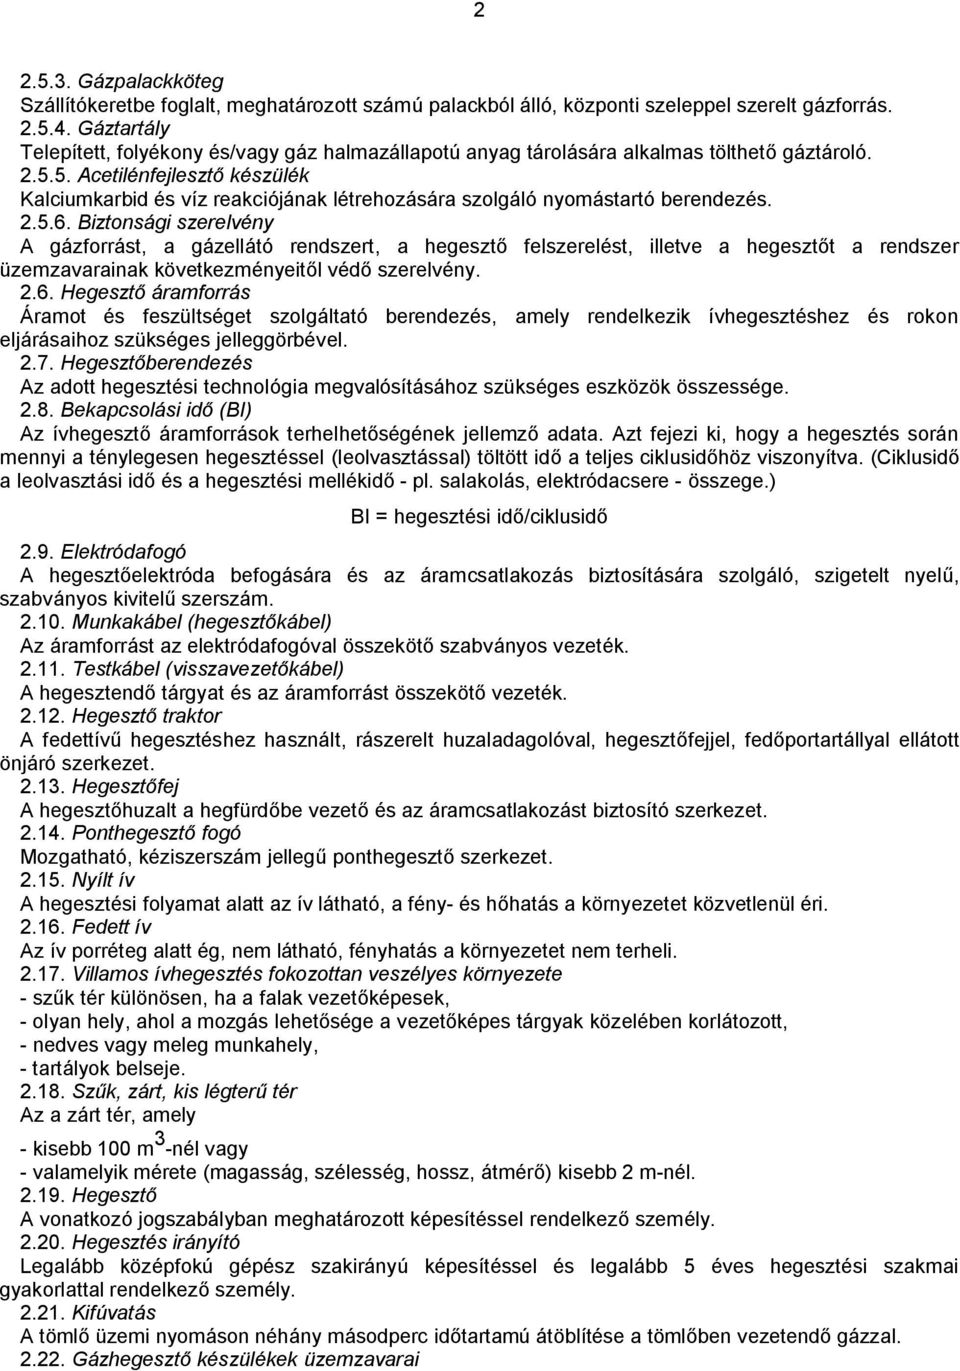 143/2004. (XII. 22.) GKM rendelet A HEGESZTÉSI BIZTONSÁGI SZABÁLYZAT  KIADÁSÁRÓL - PDF Ingyenes letöltés